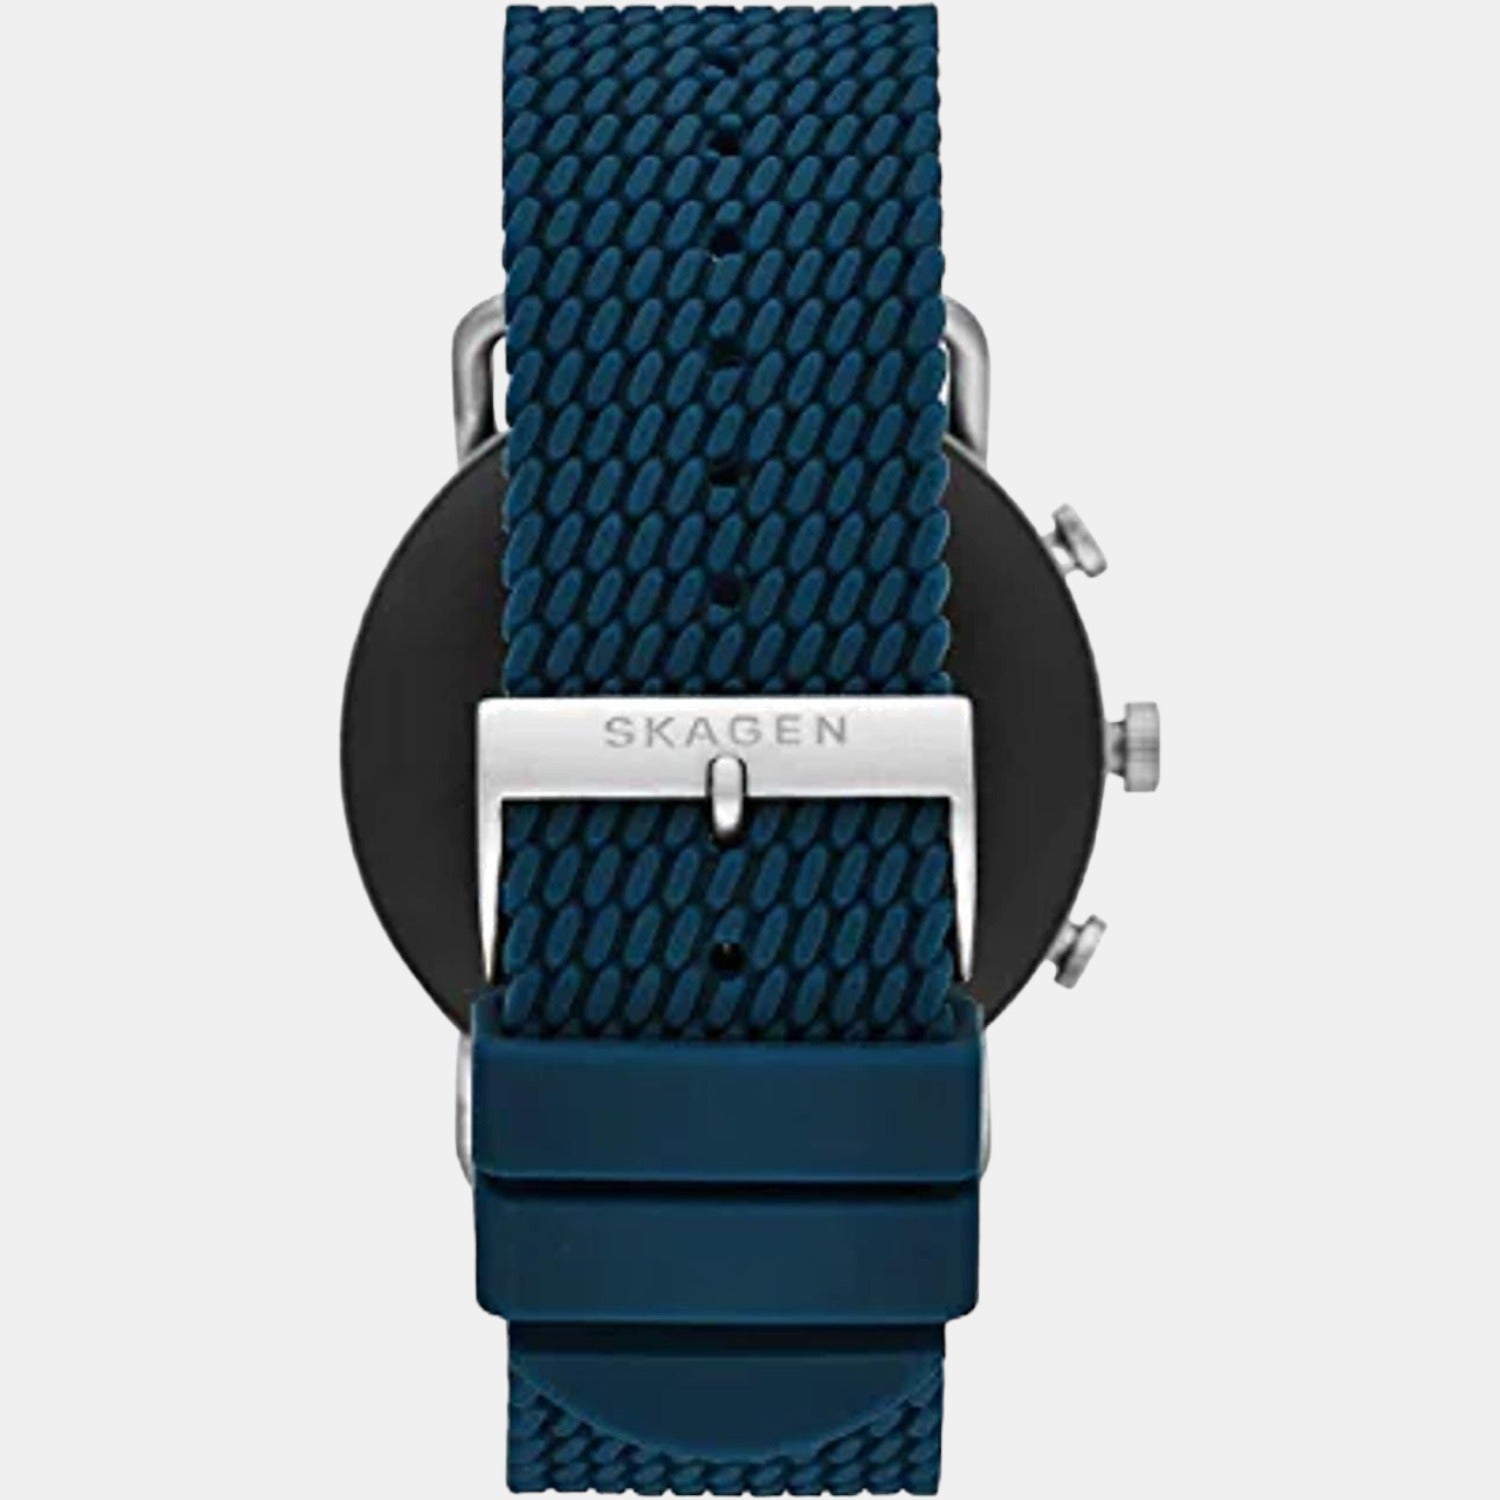 Buy Skagen Smart Watch For Men And Women Online – Krishna Watch